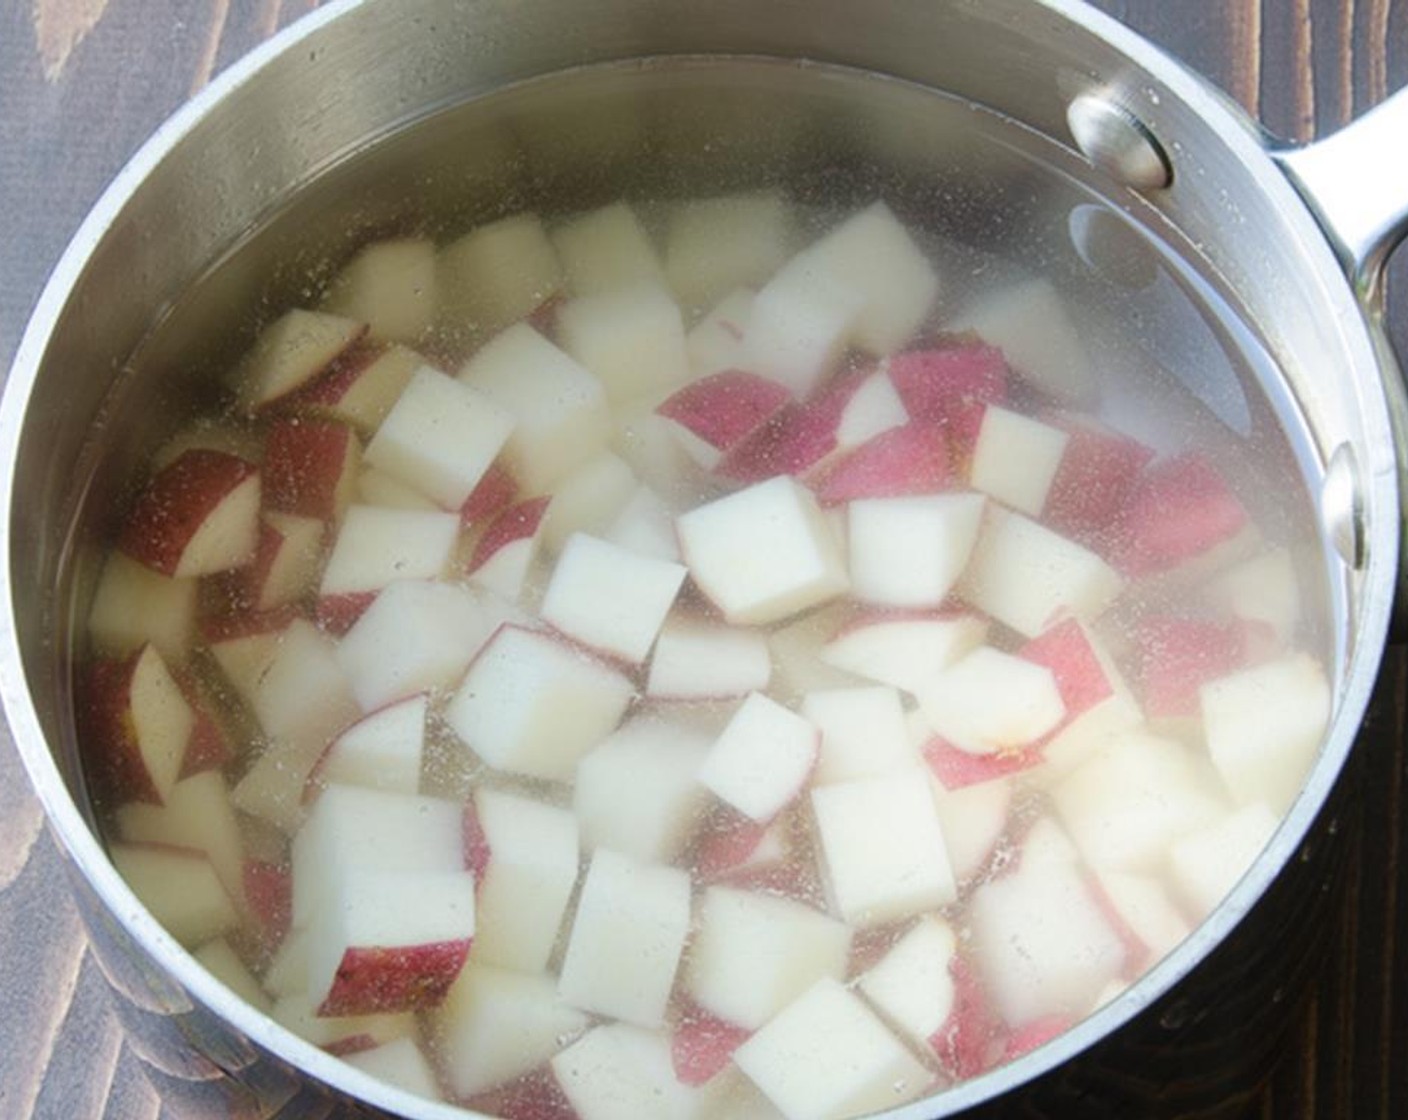 Schritt 6 In einen kleinen Topf mit Wasser geben und zum Kochen bringen. Kochen, bis die Kartoffeln weich sind. Das dauert etwa 7 bis 10 Minuten. Abgiessen und zum Abkühlen beiseitestellen.